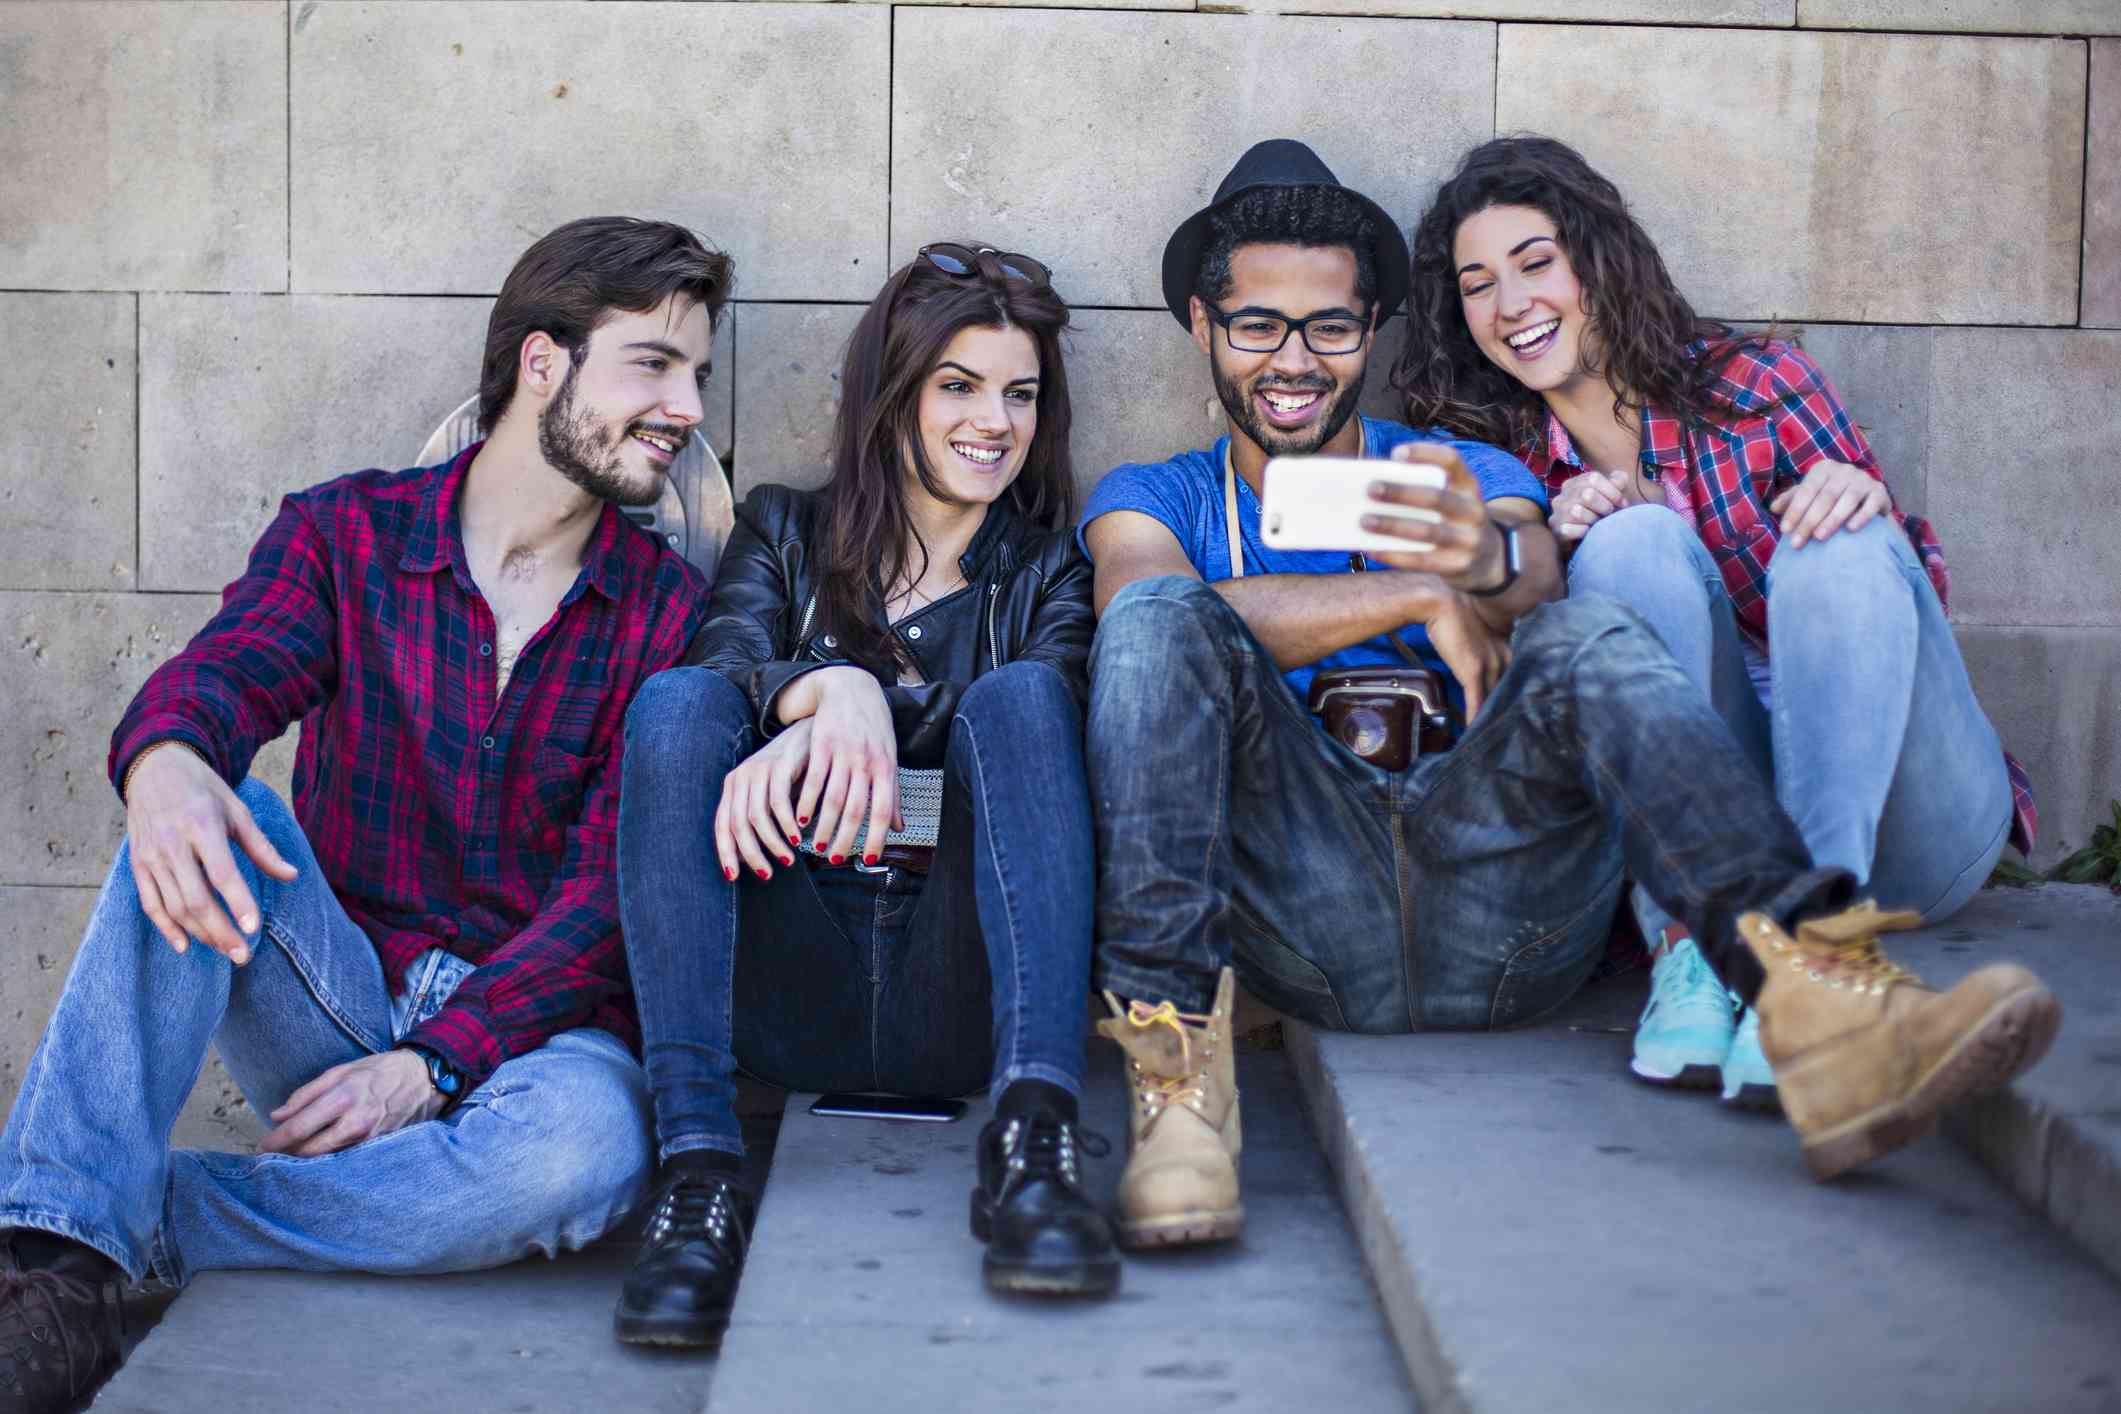 Čtyři přátelé sledují film na smartphonu sedí venku na betonových schodech.